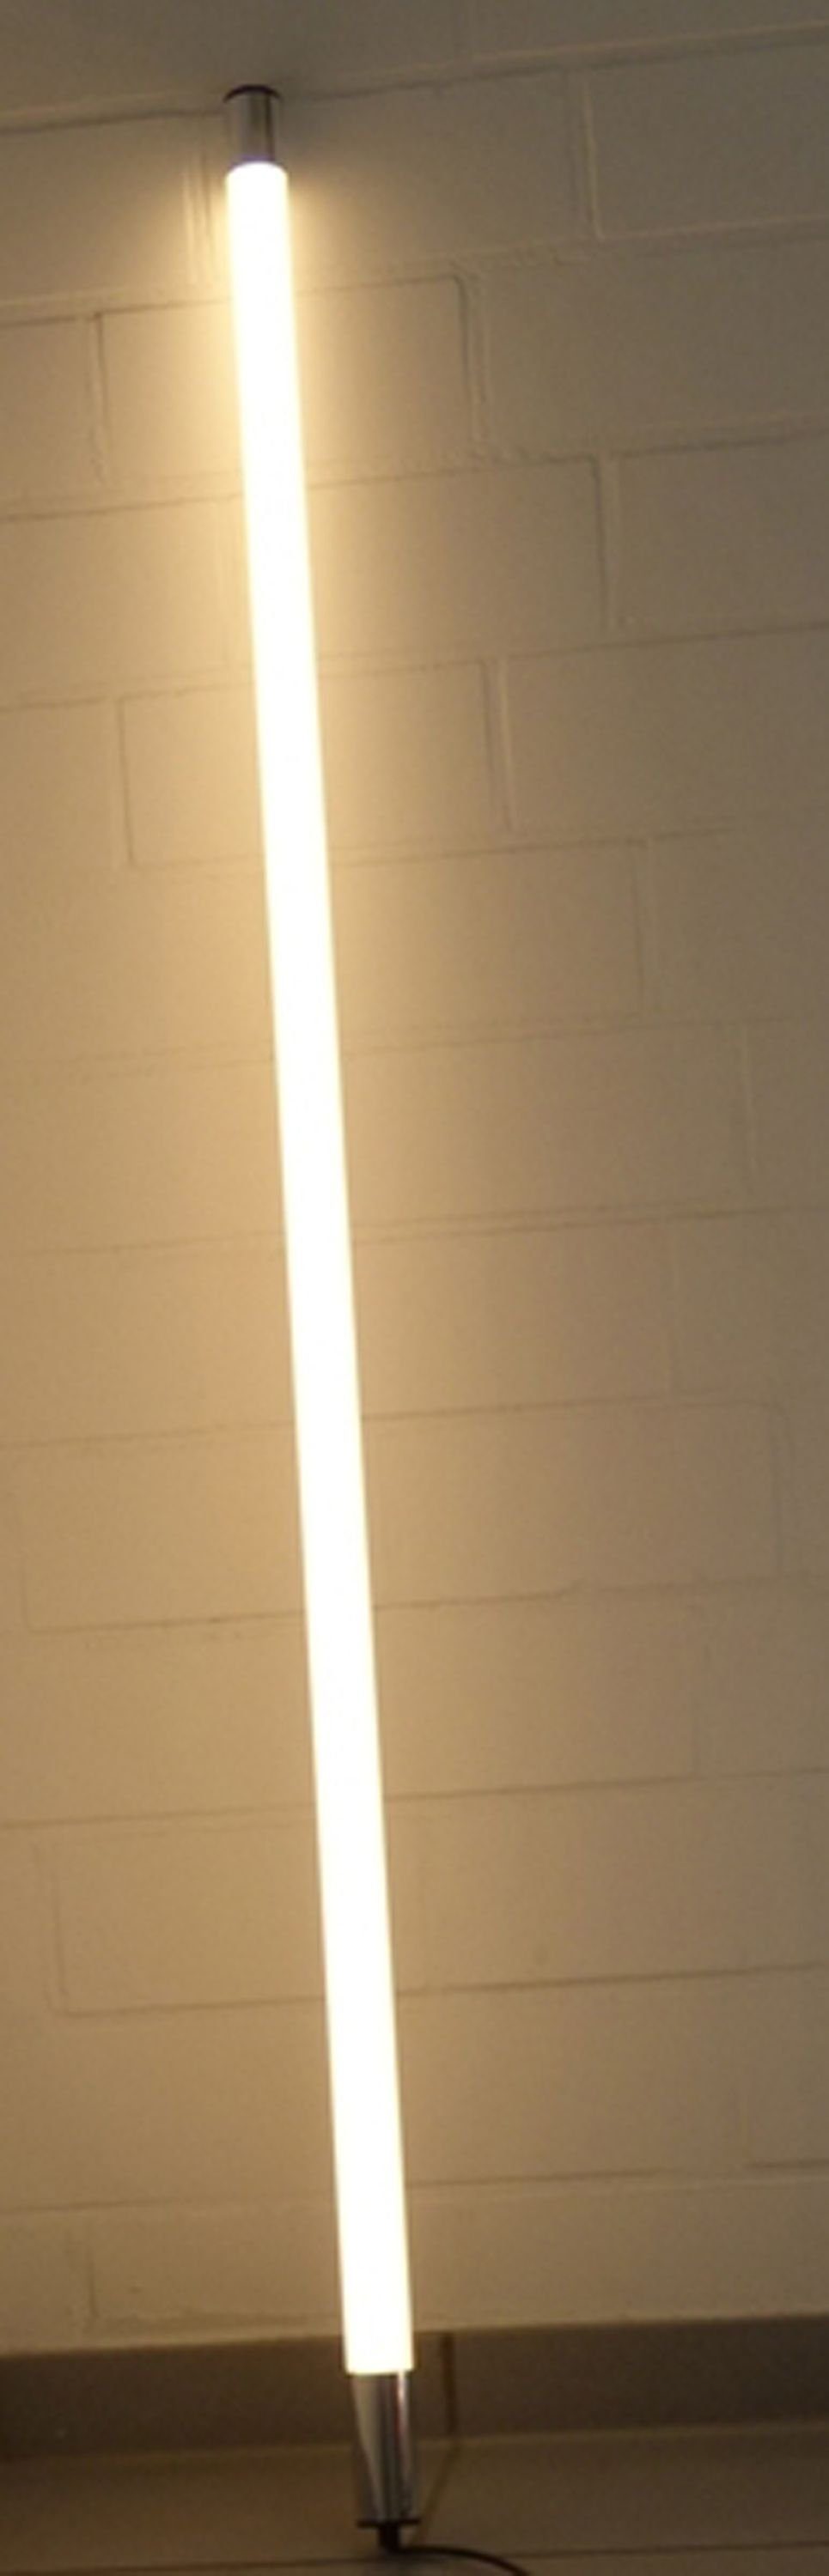 XENON LED Wandleuchte LED Leuchtstab Satiniert 1,23m Länge 1700 Lumen IP44 Außen Warm Weiß, LED Röhre T8, Xenon Warm Weiß